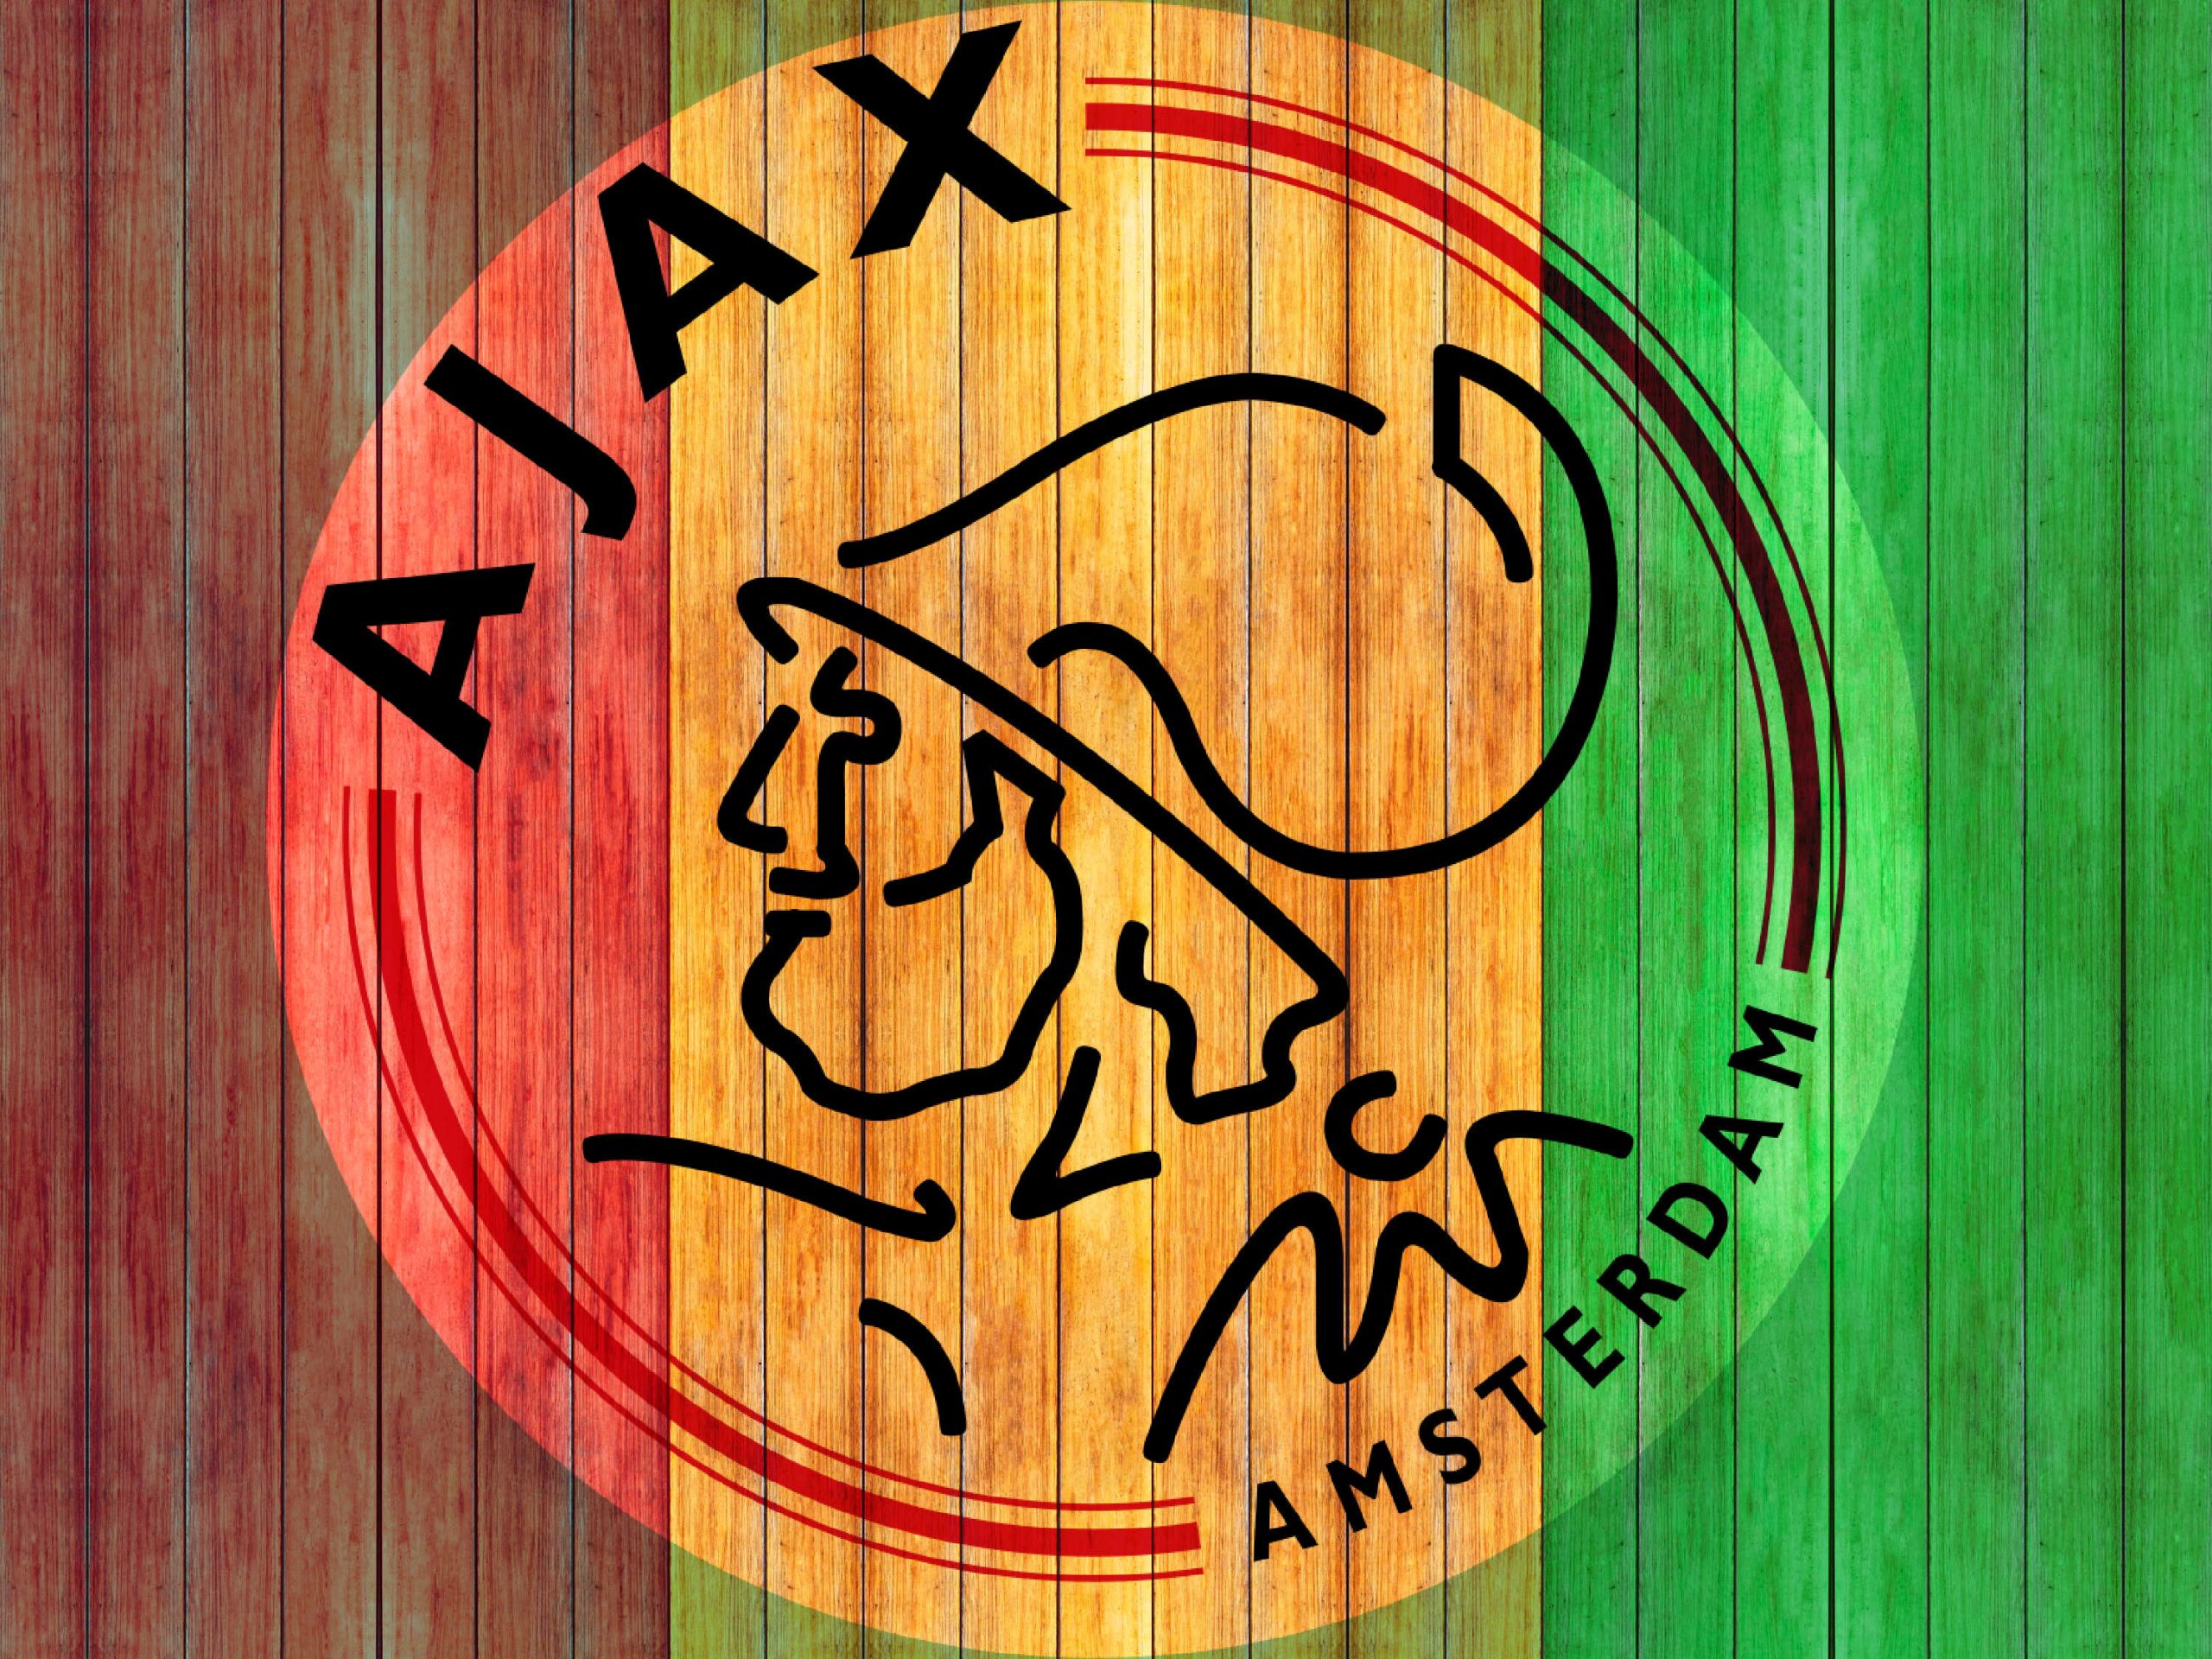 Ajax Amsterdam x Bob Marley (1)